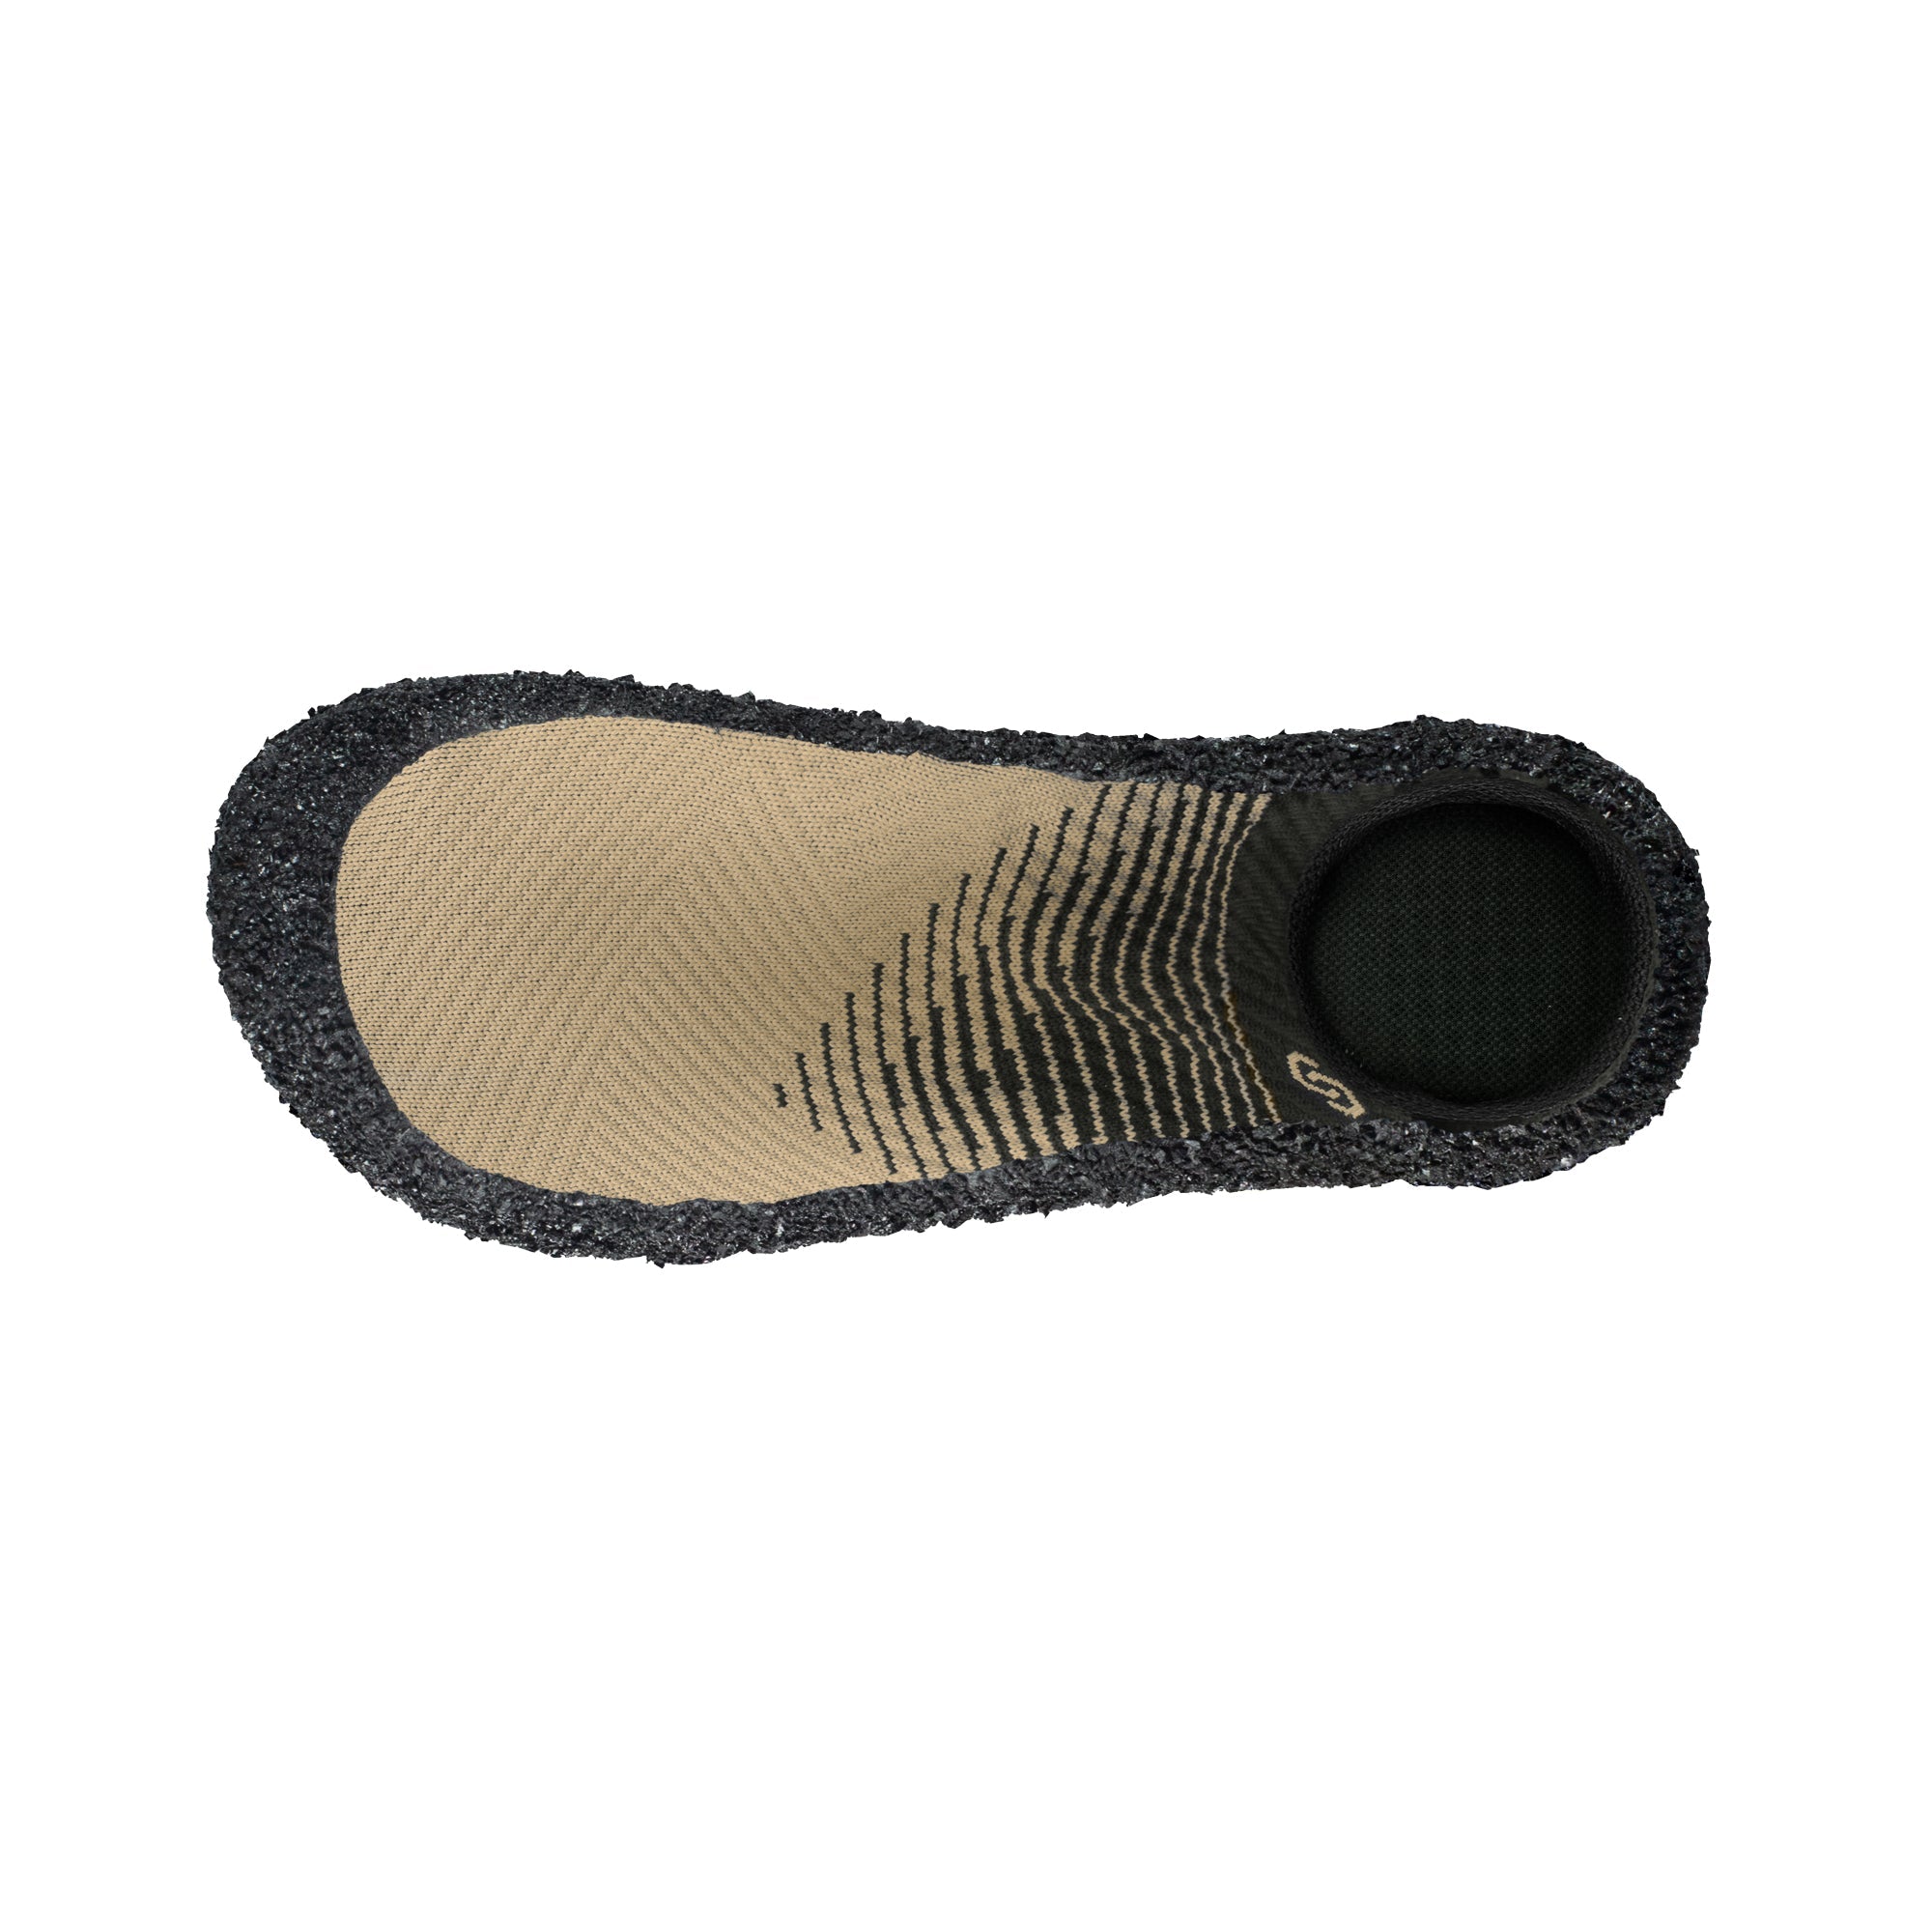 Skinners Skinners Comfort 2.0 barfods udendørssokker til kvinder og mænd i farven sand, top